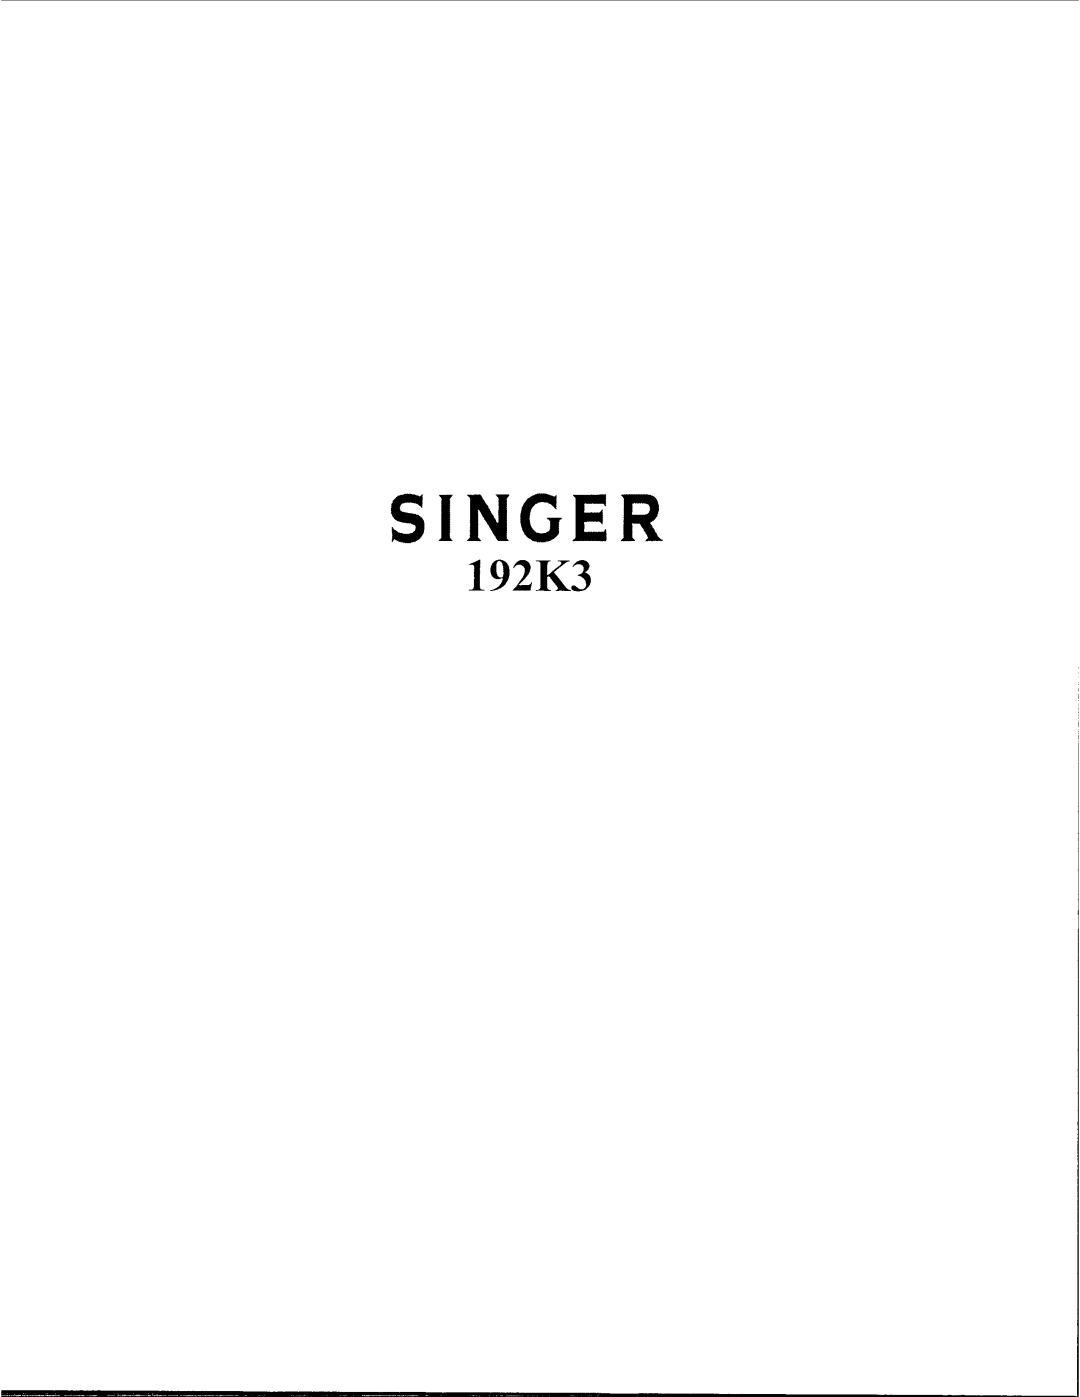 Singer 192K3 manual 